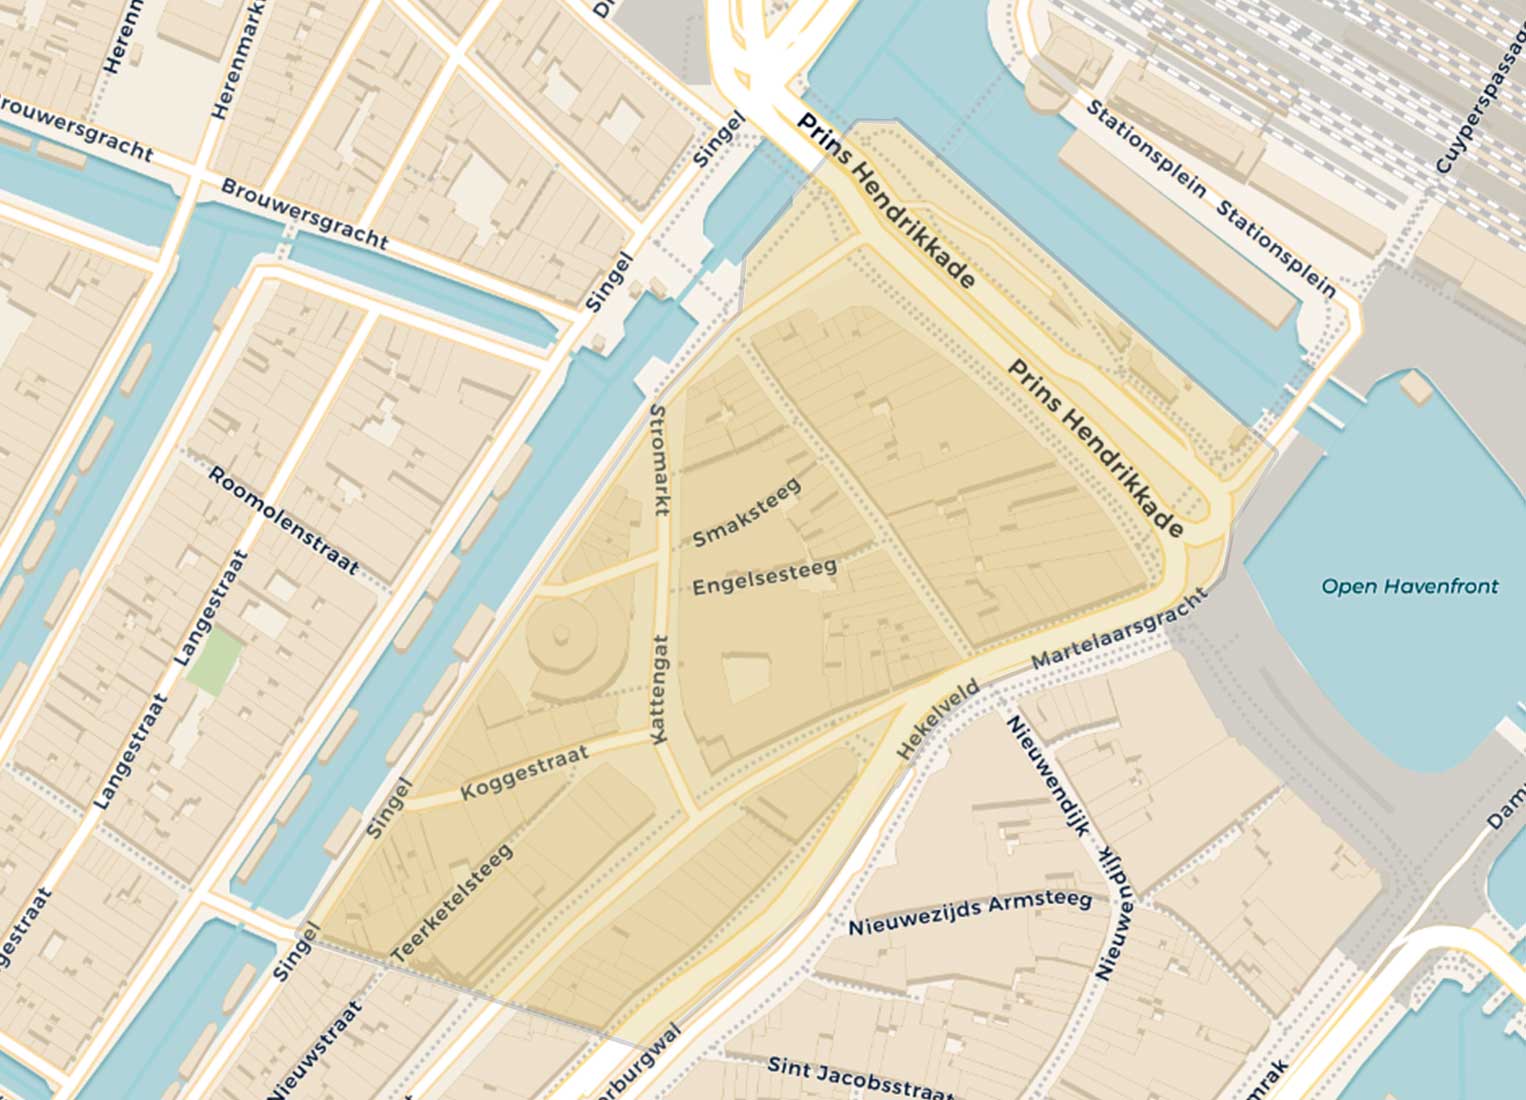 De buurt Hemelrijk in Amsterdam op de huidige kaart